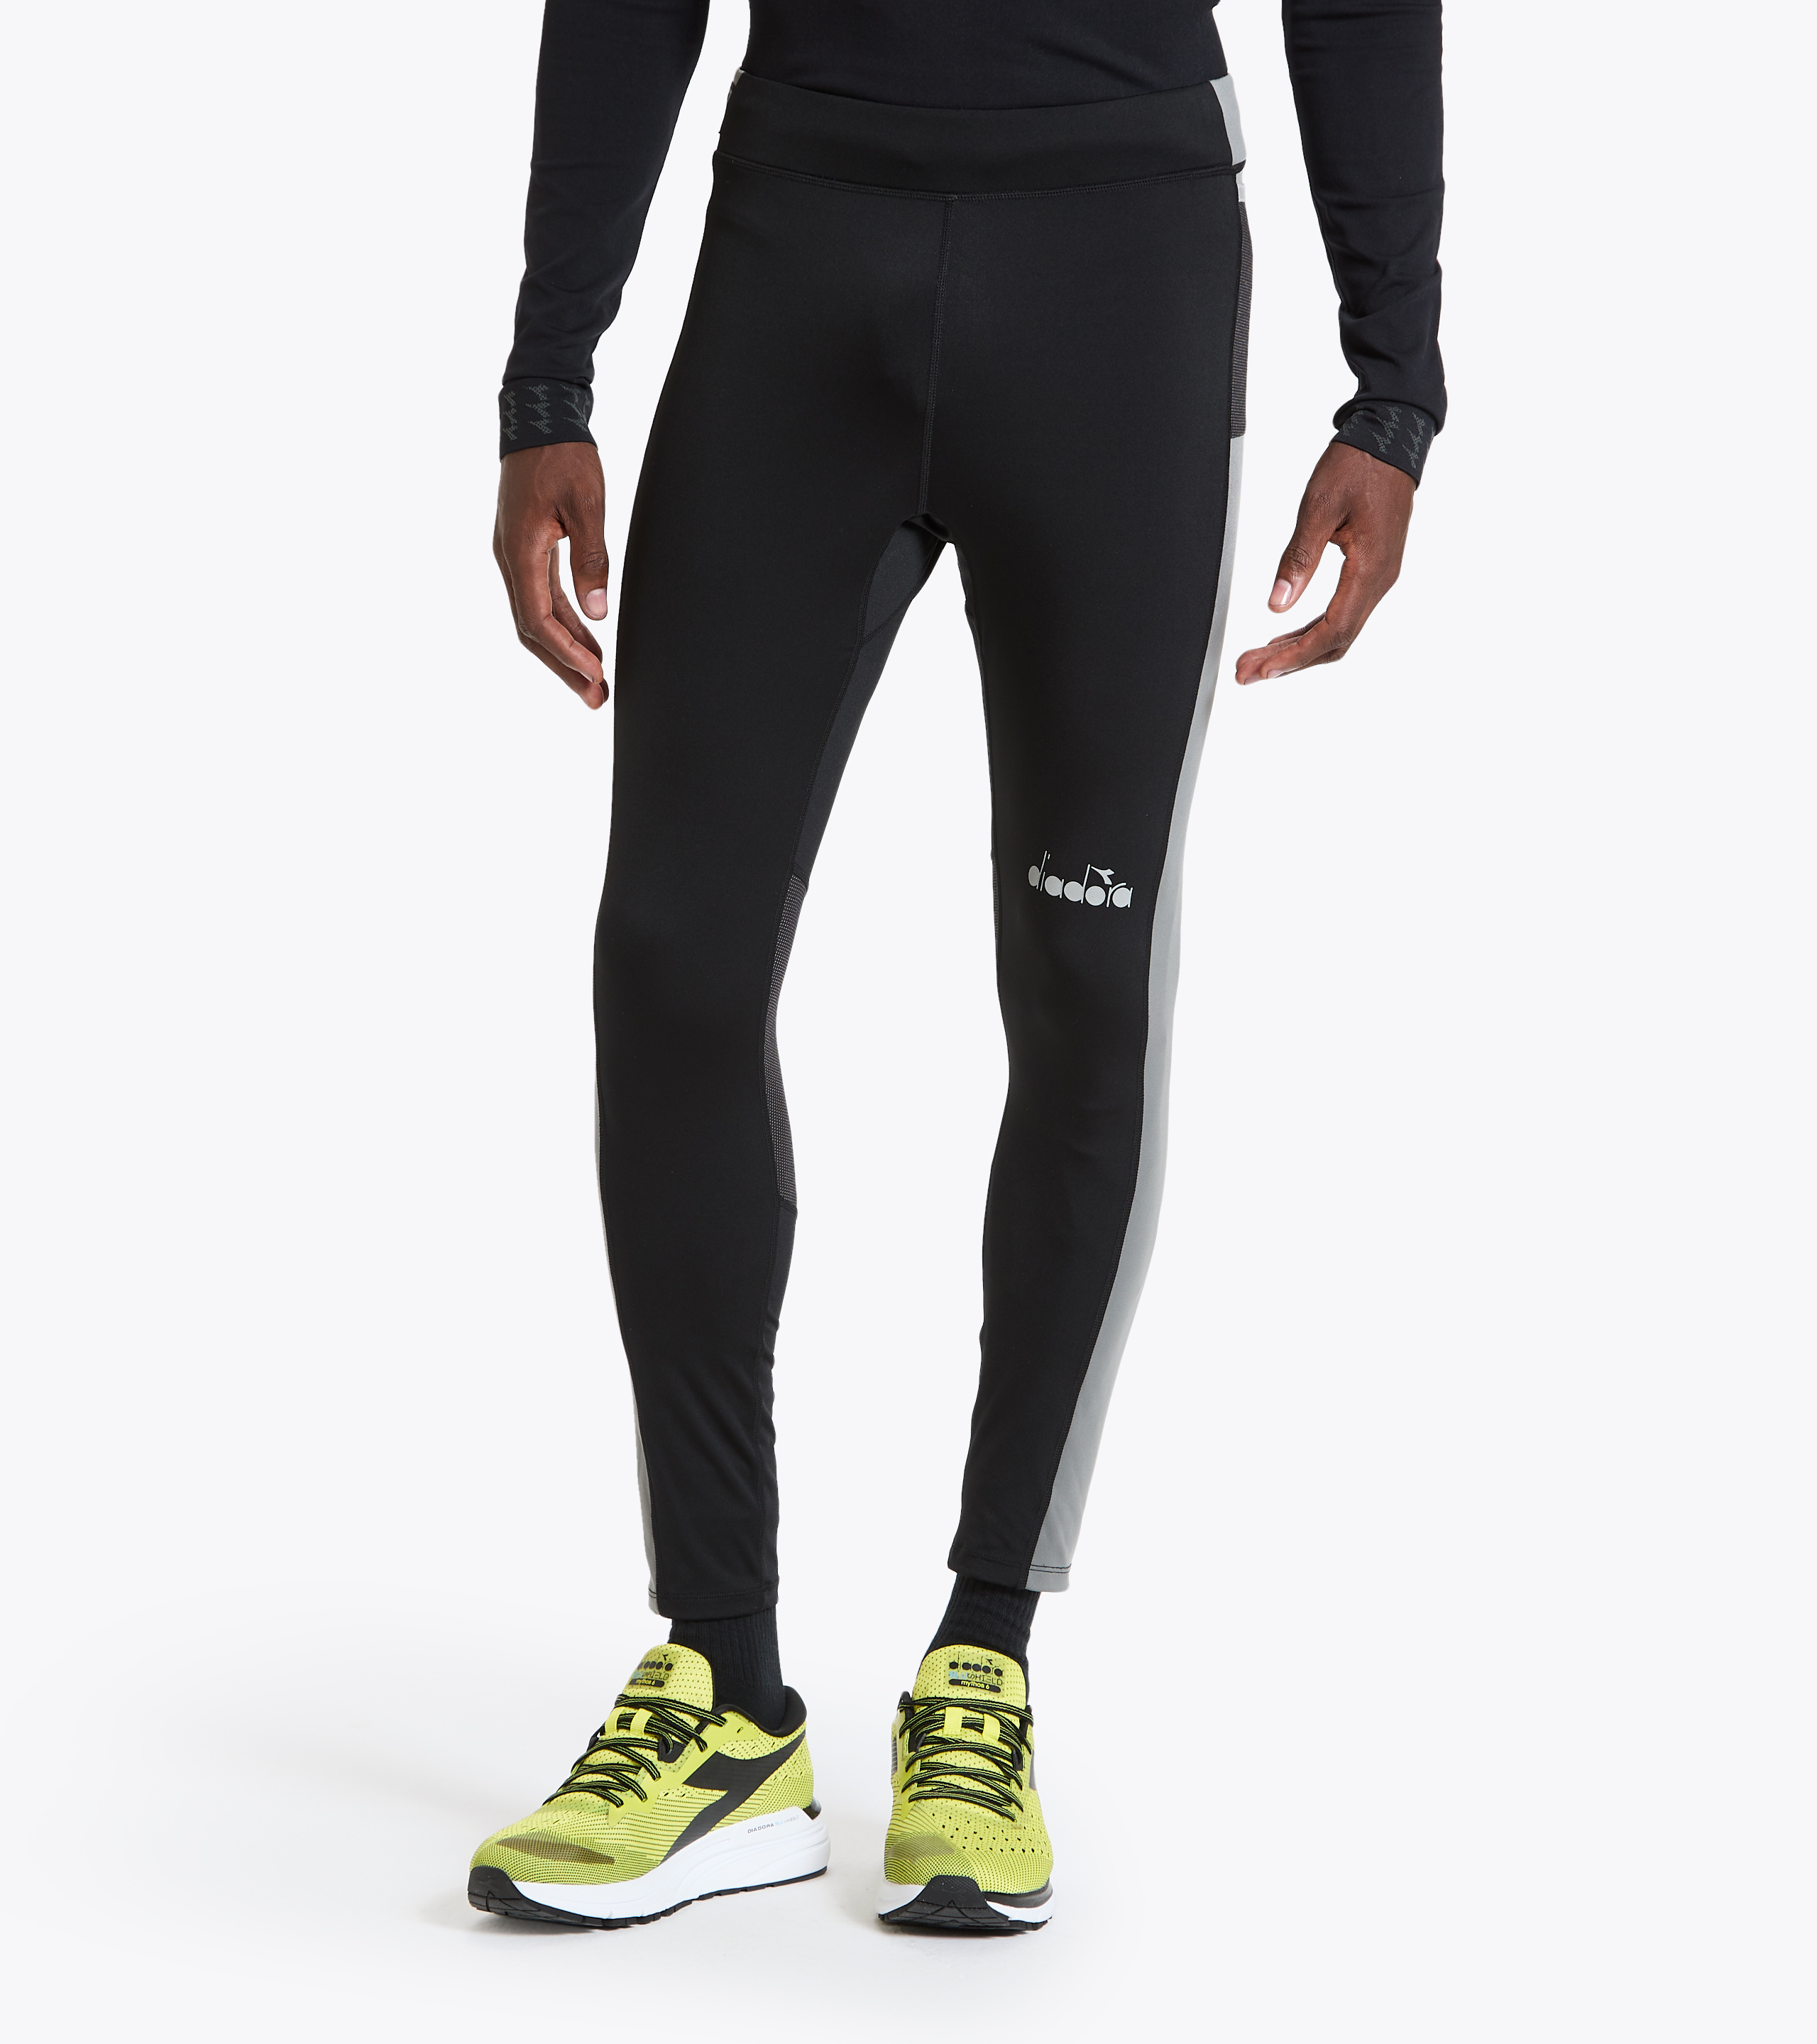 RUNNING TIGHTS Running leggings - Men Store US